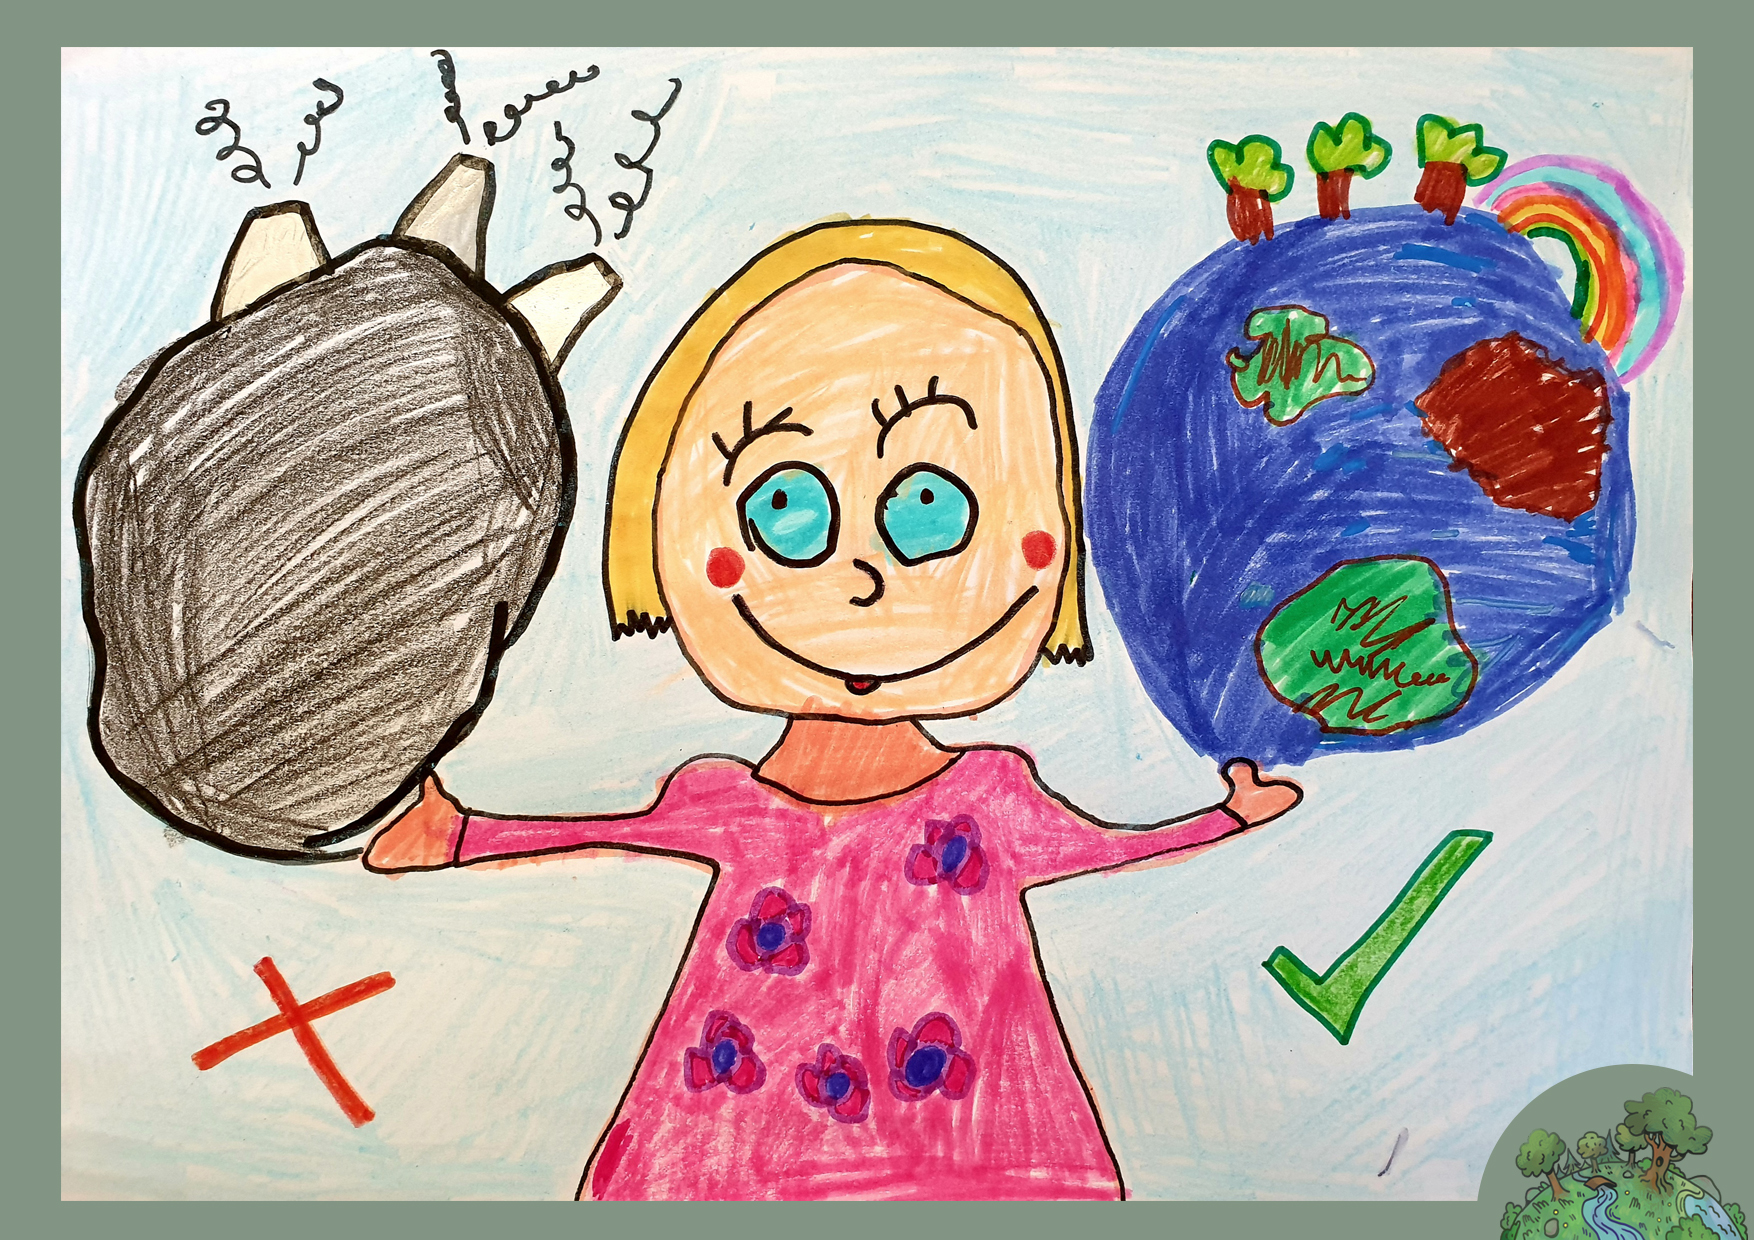 Török Vanda, 6 éves<br />A kép címe: Én nem a környezetszennyezést, hanem a tiszta Földet választom!<br />Alkalmazott technika: színes ceruza, filc, zsírkréta, dekorfilc